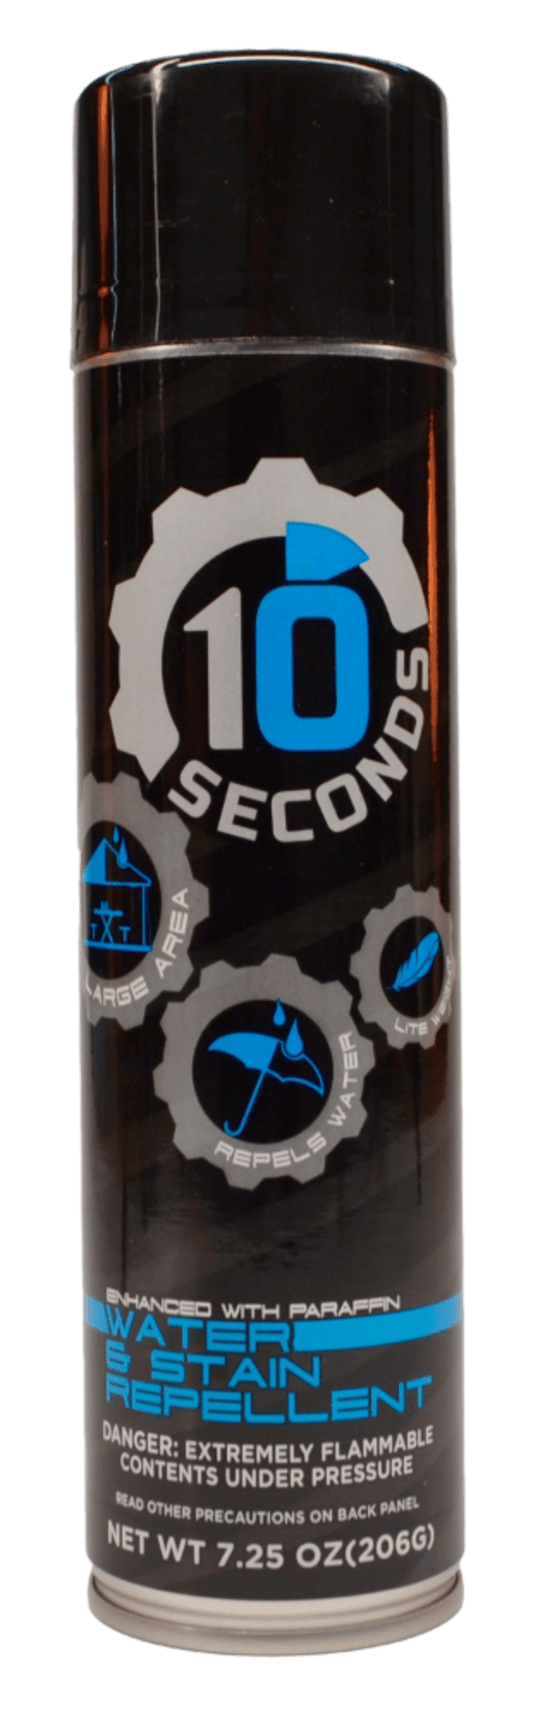 10 Seconds 3020 Pressure Relief Insole